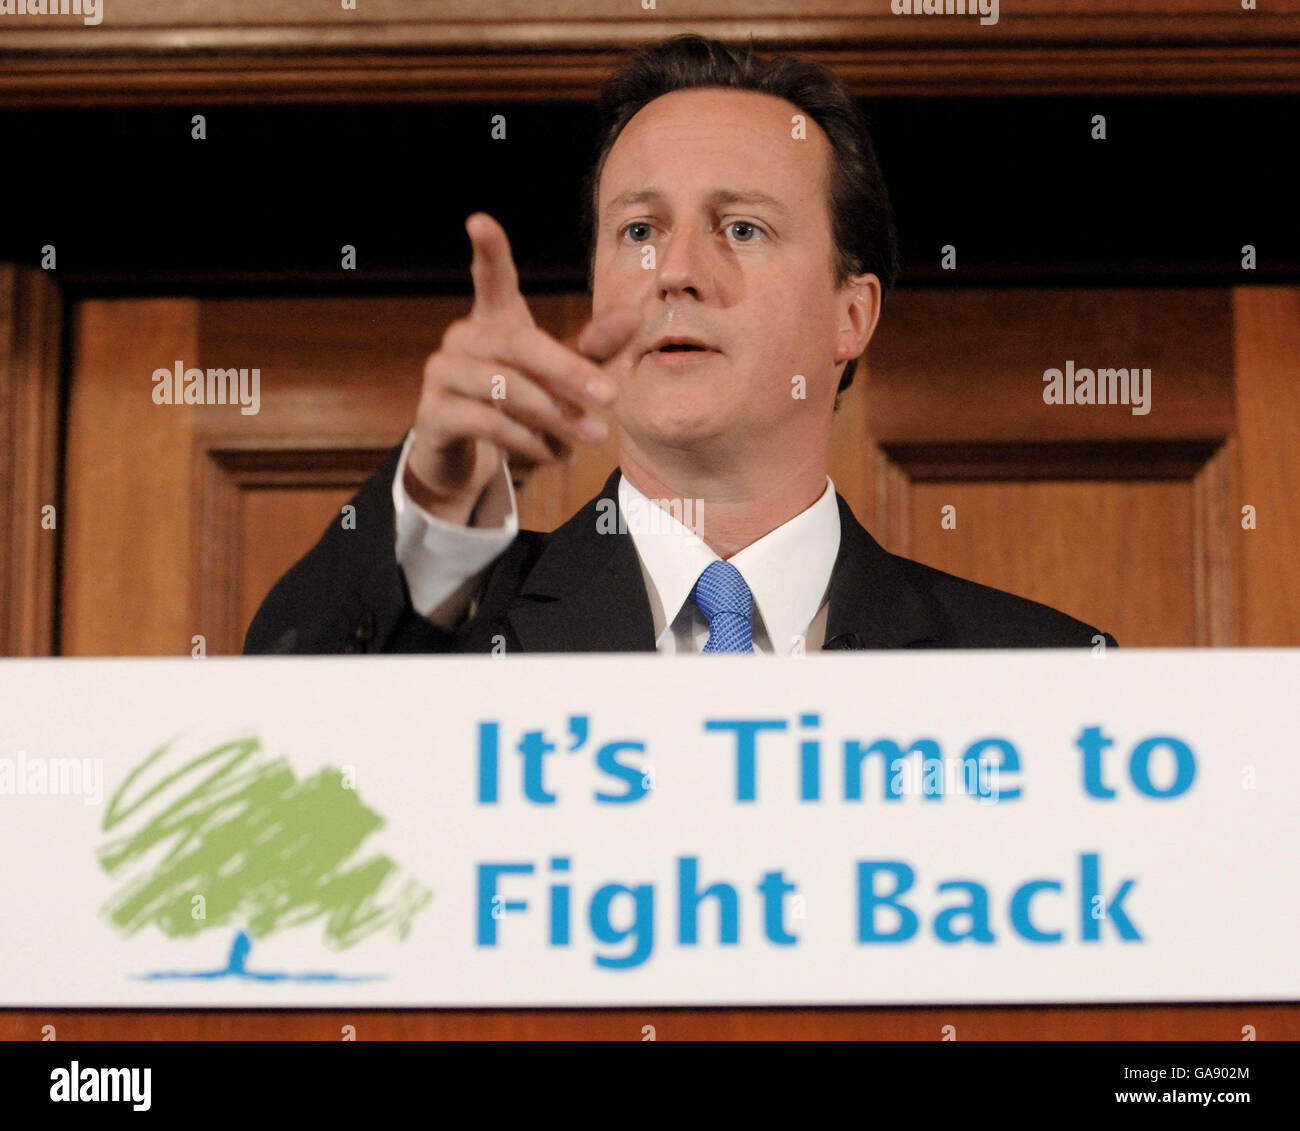 Il leader del Partito conservatore David Cameron durante una conferenza stampa a Londra, dove ha svelato piani difficili per affrontare la "crisi del crimine" britannica rafforzando i poteri della polizia e contrastando la violenza casuale nella cultura popolare. Foto Stock